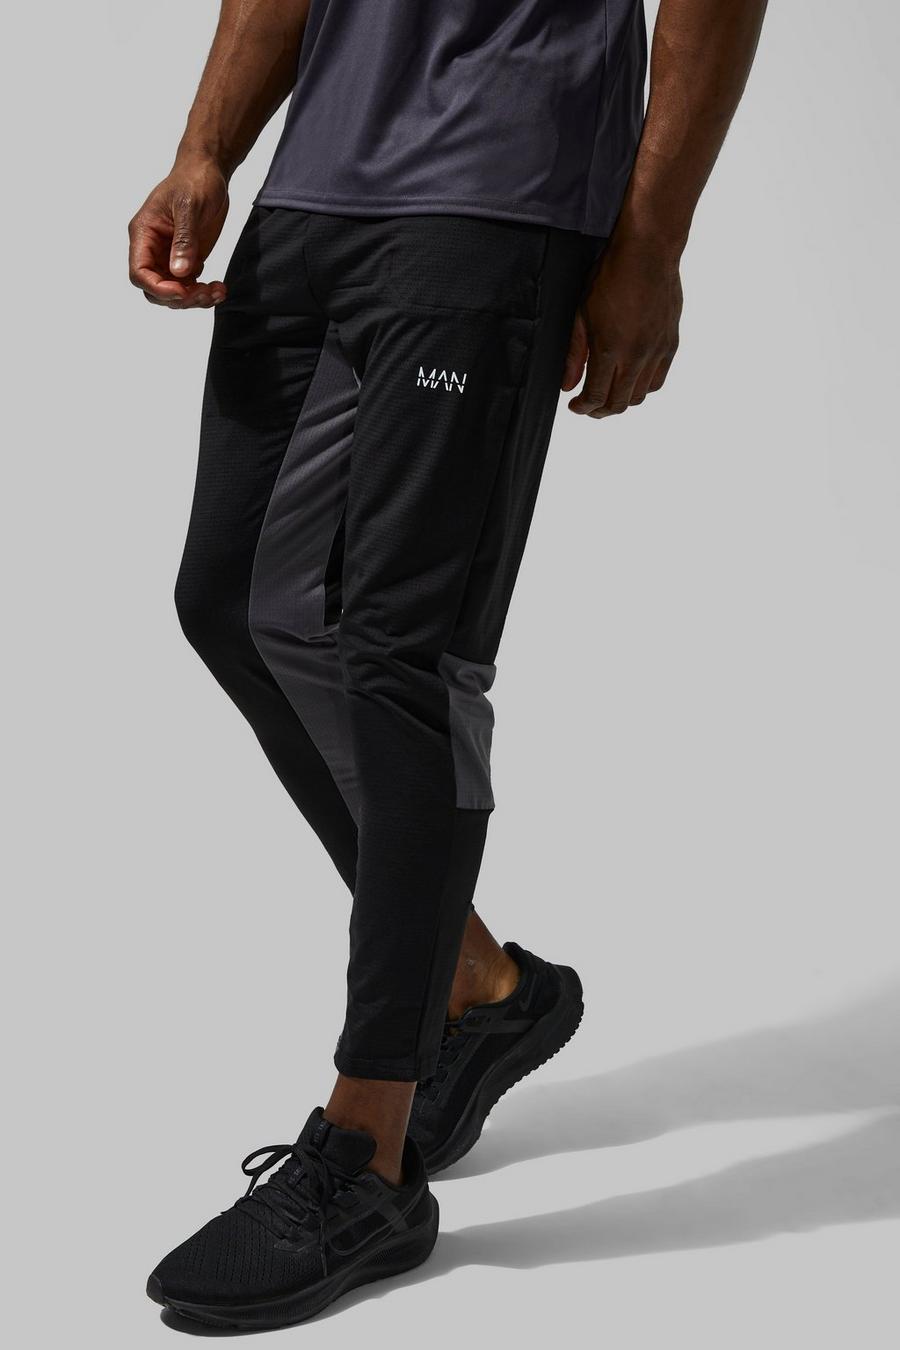 Pantalón deportivo pesquero MAN Active súper elástico, Black negro